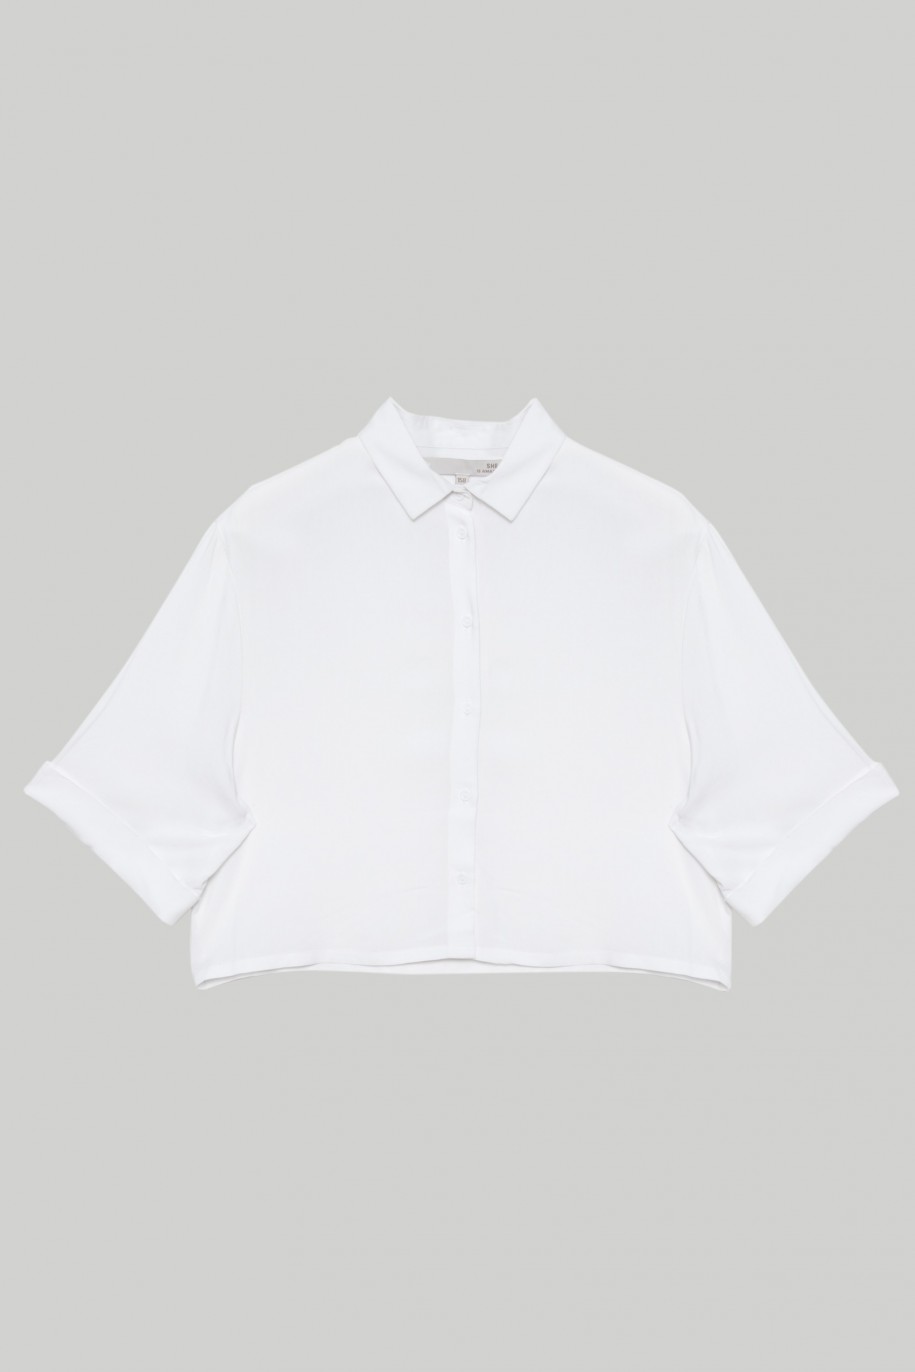 Biała koszula z krótkim rękawem dla dziewczyny - 28269